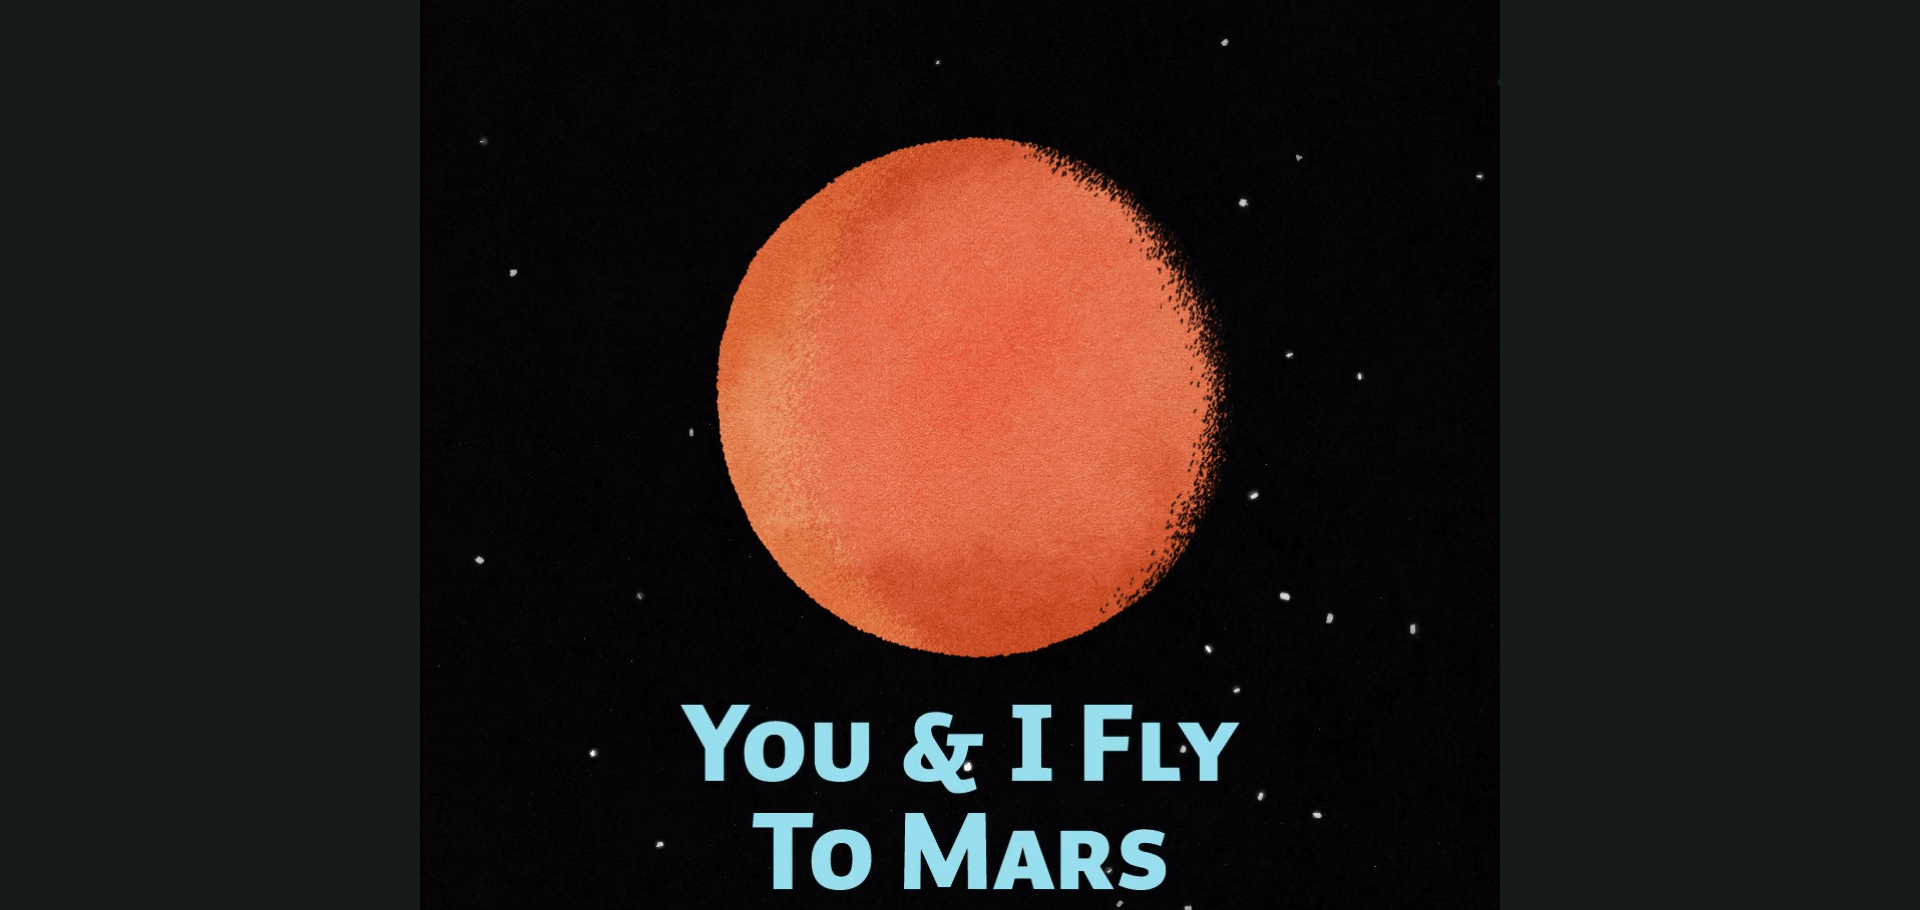 أنت وأنا نسافر إلى المريخ